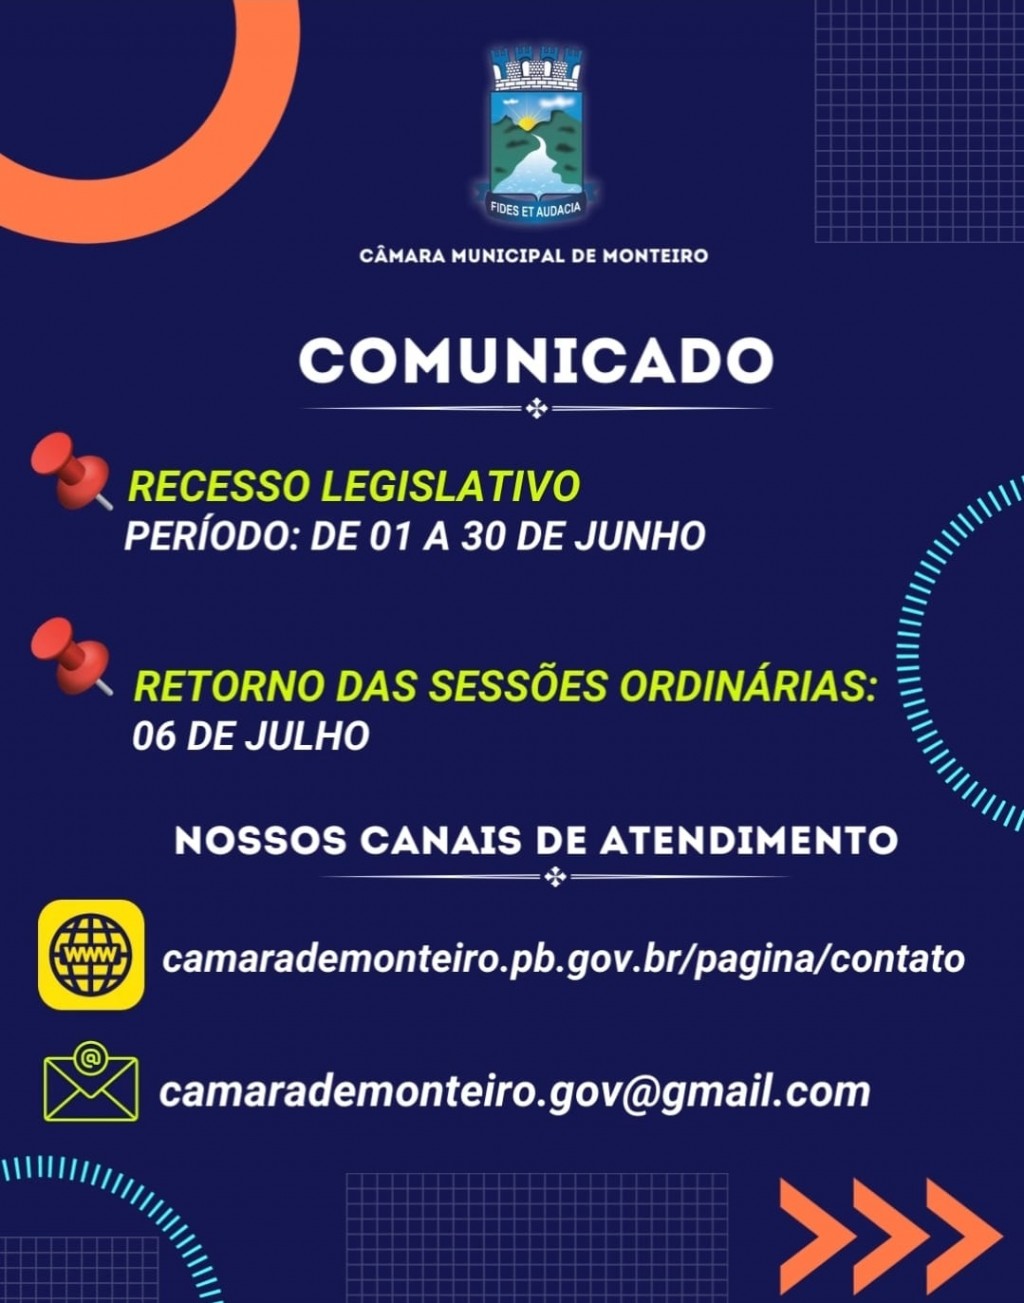 Câmara de Monteiro entra em período Recesso Legislativo a partir desta quinta-feira.